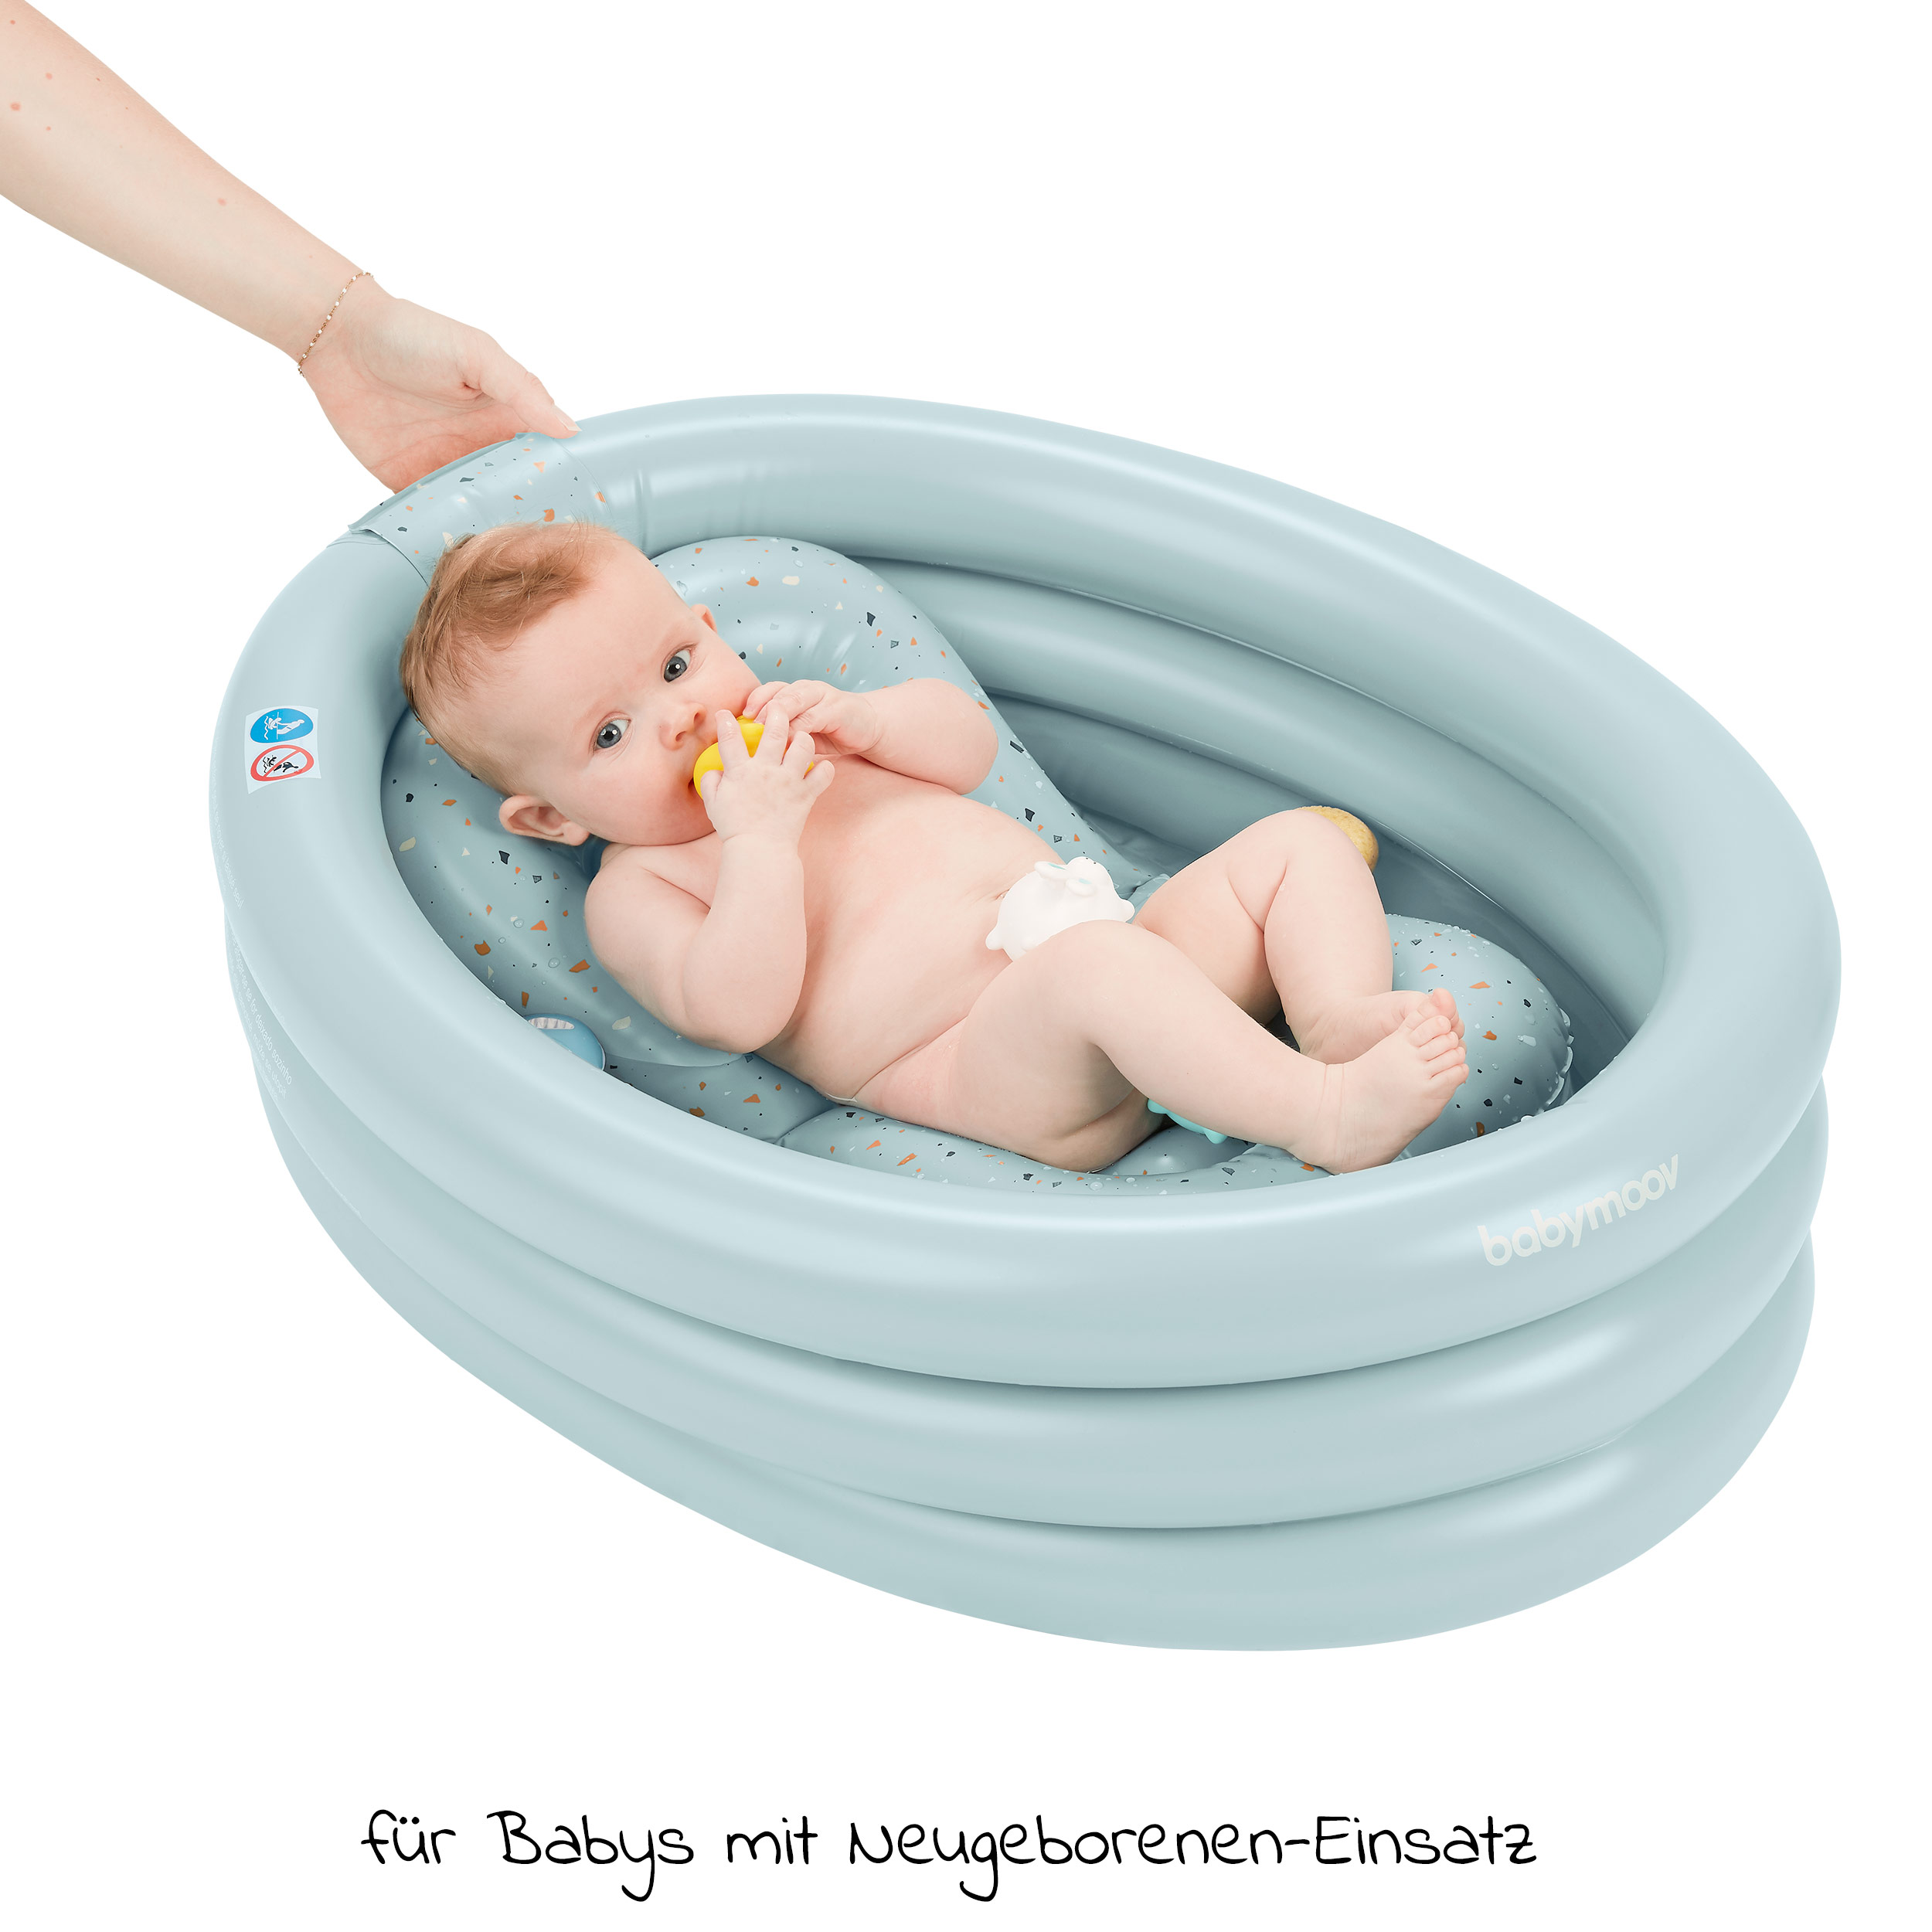 Kinder Schwimmbad Faltbare Reisedusche Kid Kleinkind Reise Luftdusche Becken Planschbecken für Neugeborene 0-3 Jahre Baby Rosa Uong Aufblasbare Baby Badewanne 